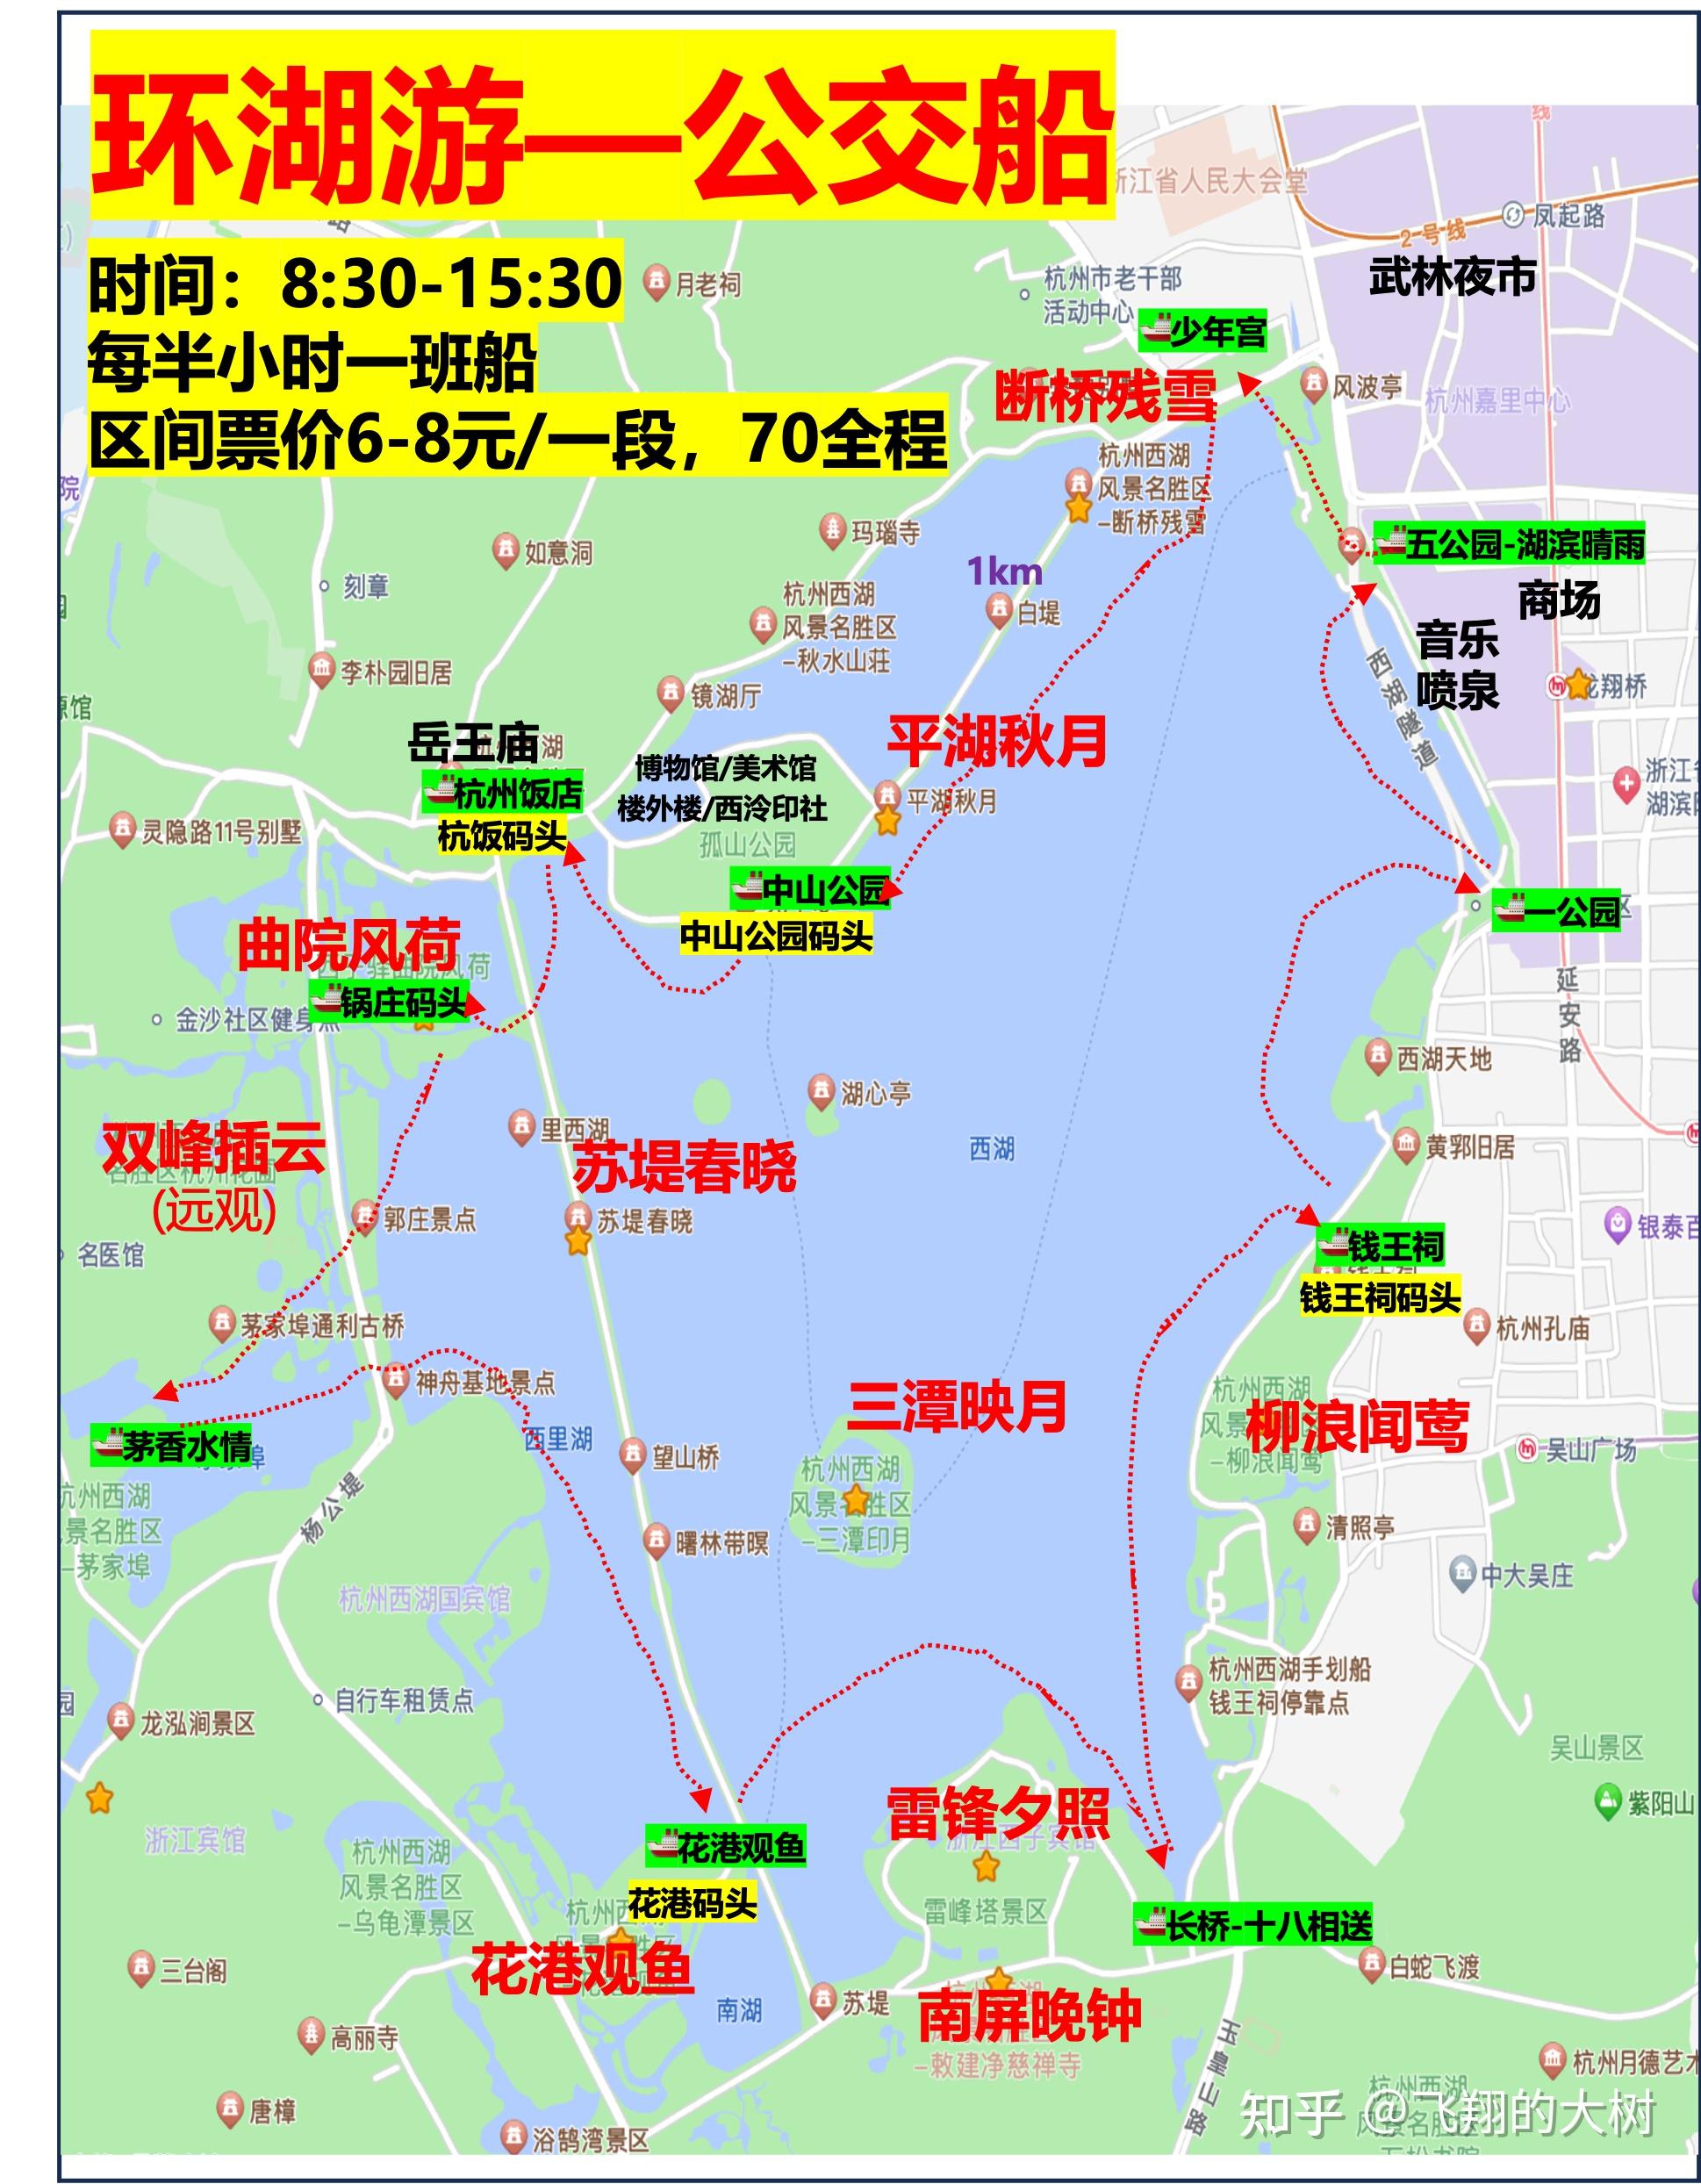 终于有人讲清楚杭州西湖游船攻略了!